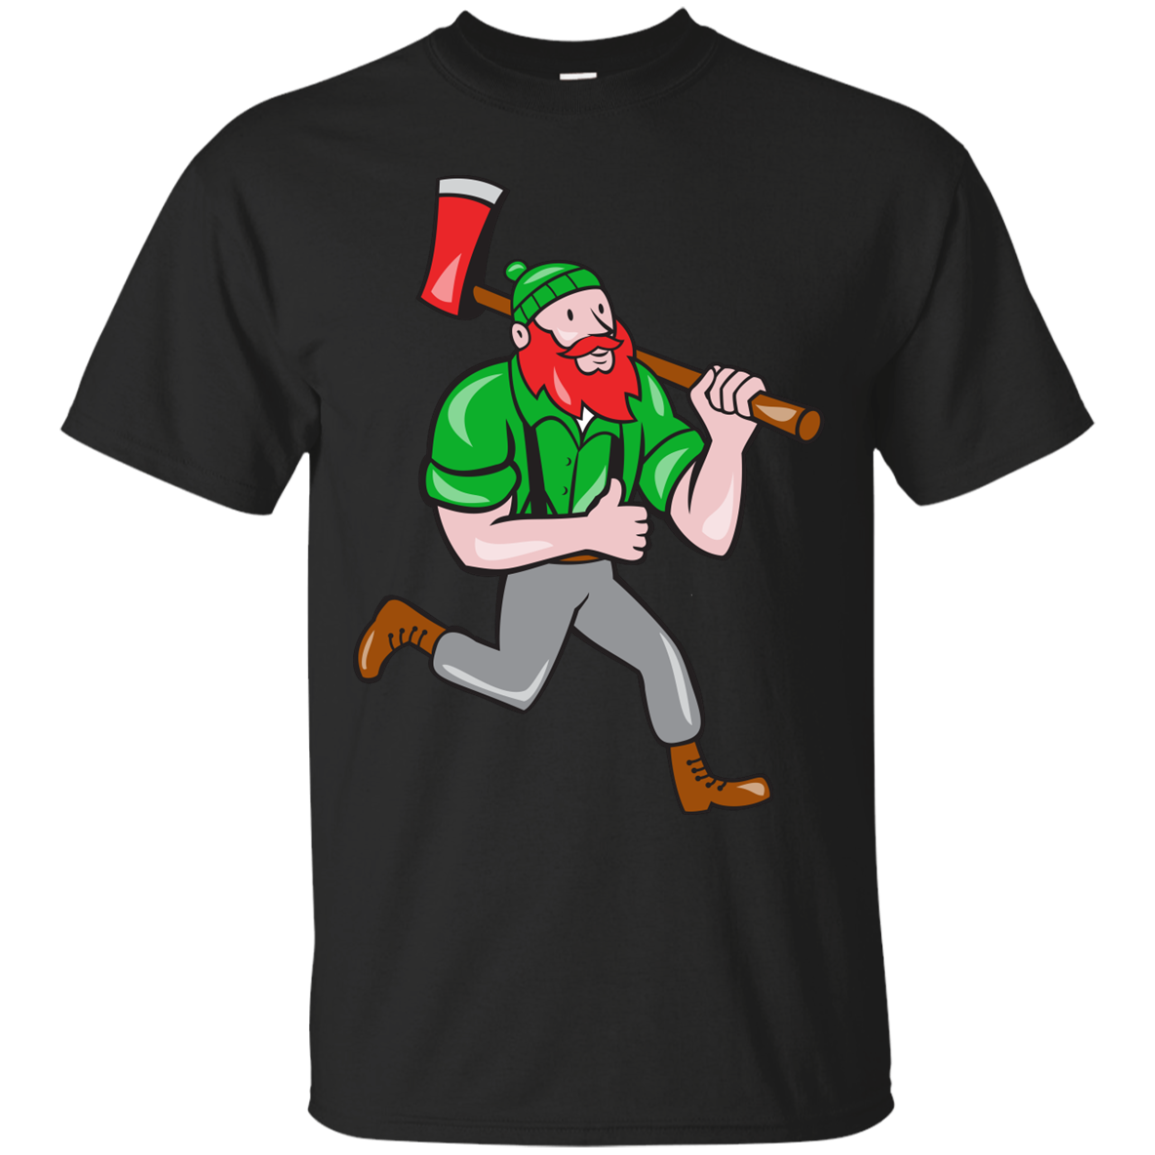 Paul Bunyan Lumberjack Axe Running Cartoon T-shirt